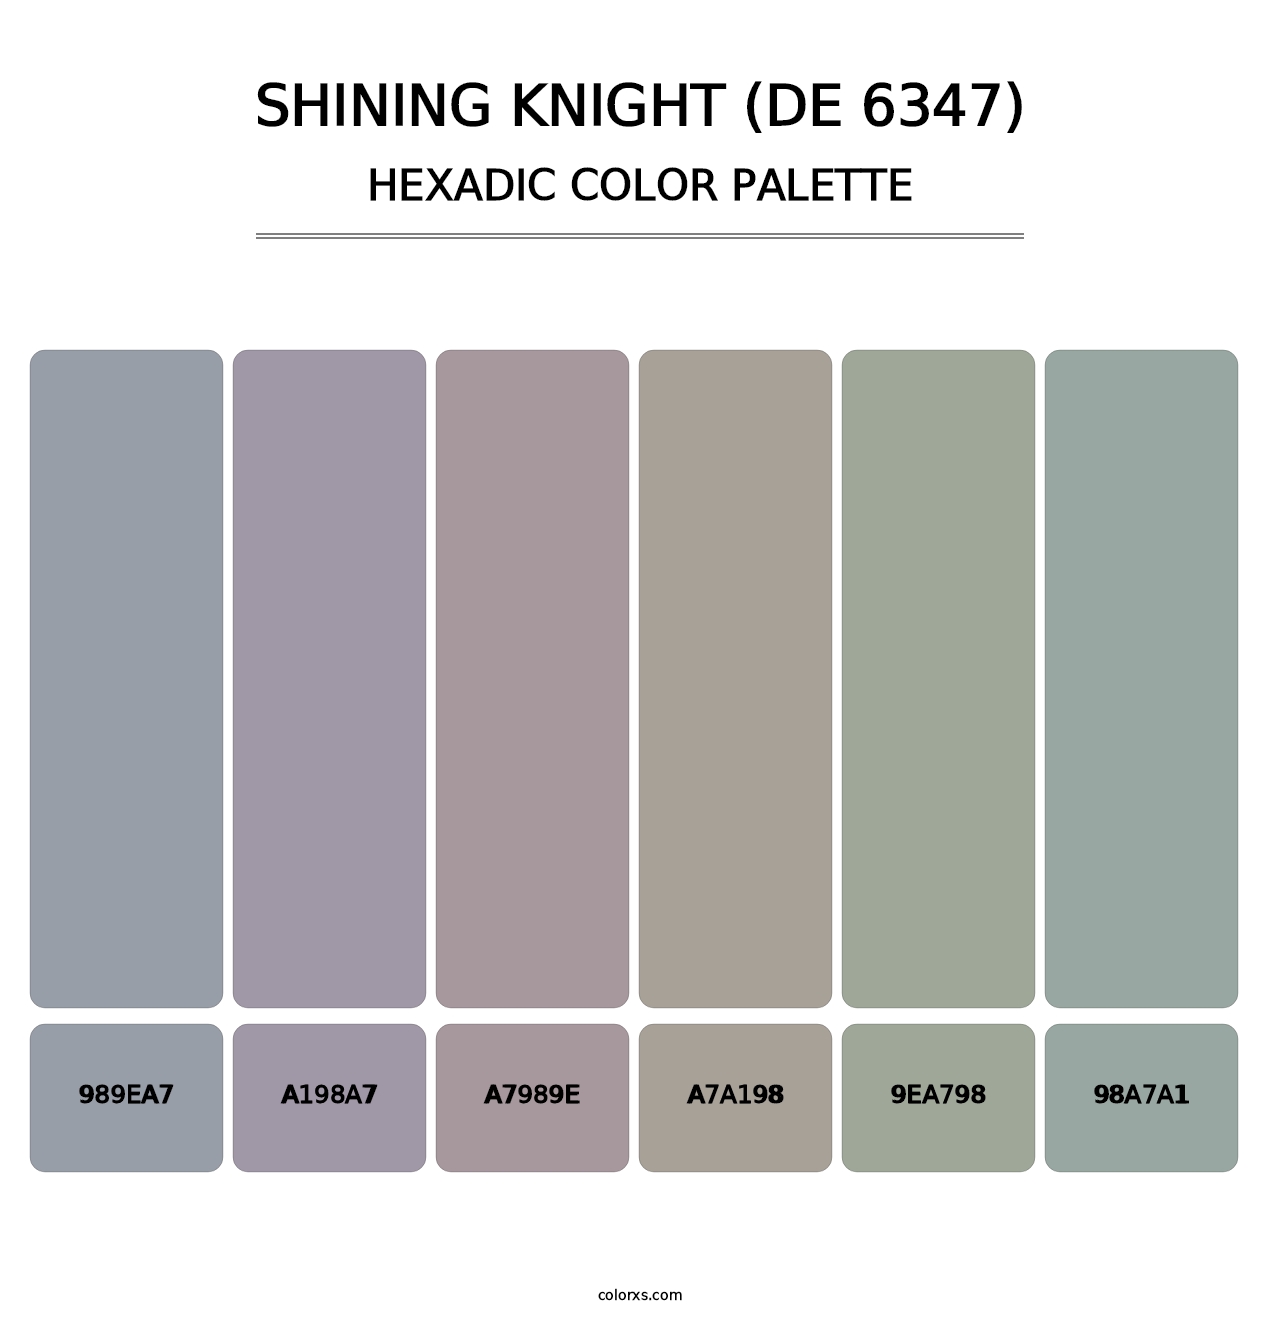 Shining Knight (DE 6347) - Hexadic Color Palette